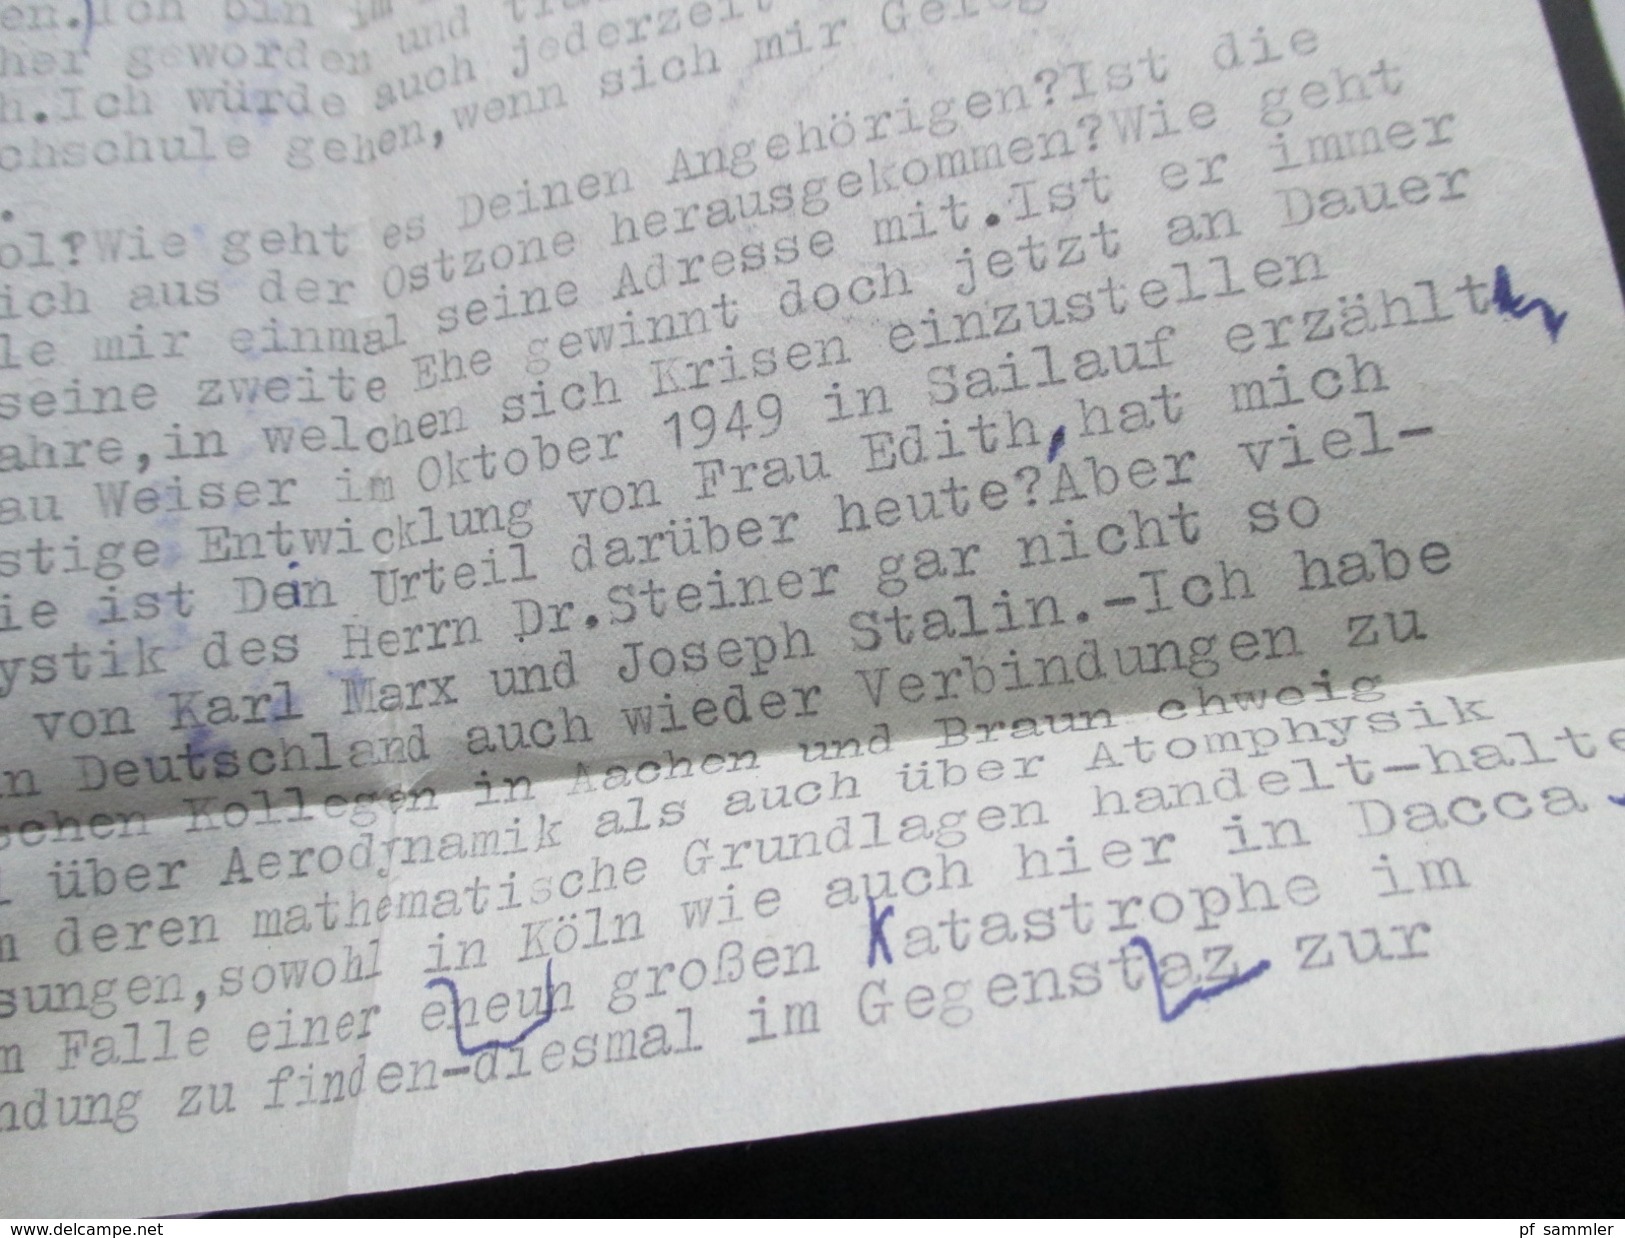 Pakistan 1952 Air Mail / Air Letter / Aerogramm. Nach Jenbach Tirol. Weitergeleitet. Mit Interessantem Inhalt. Professor